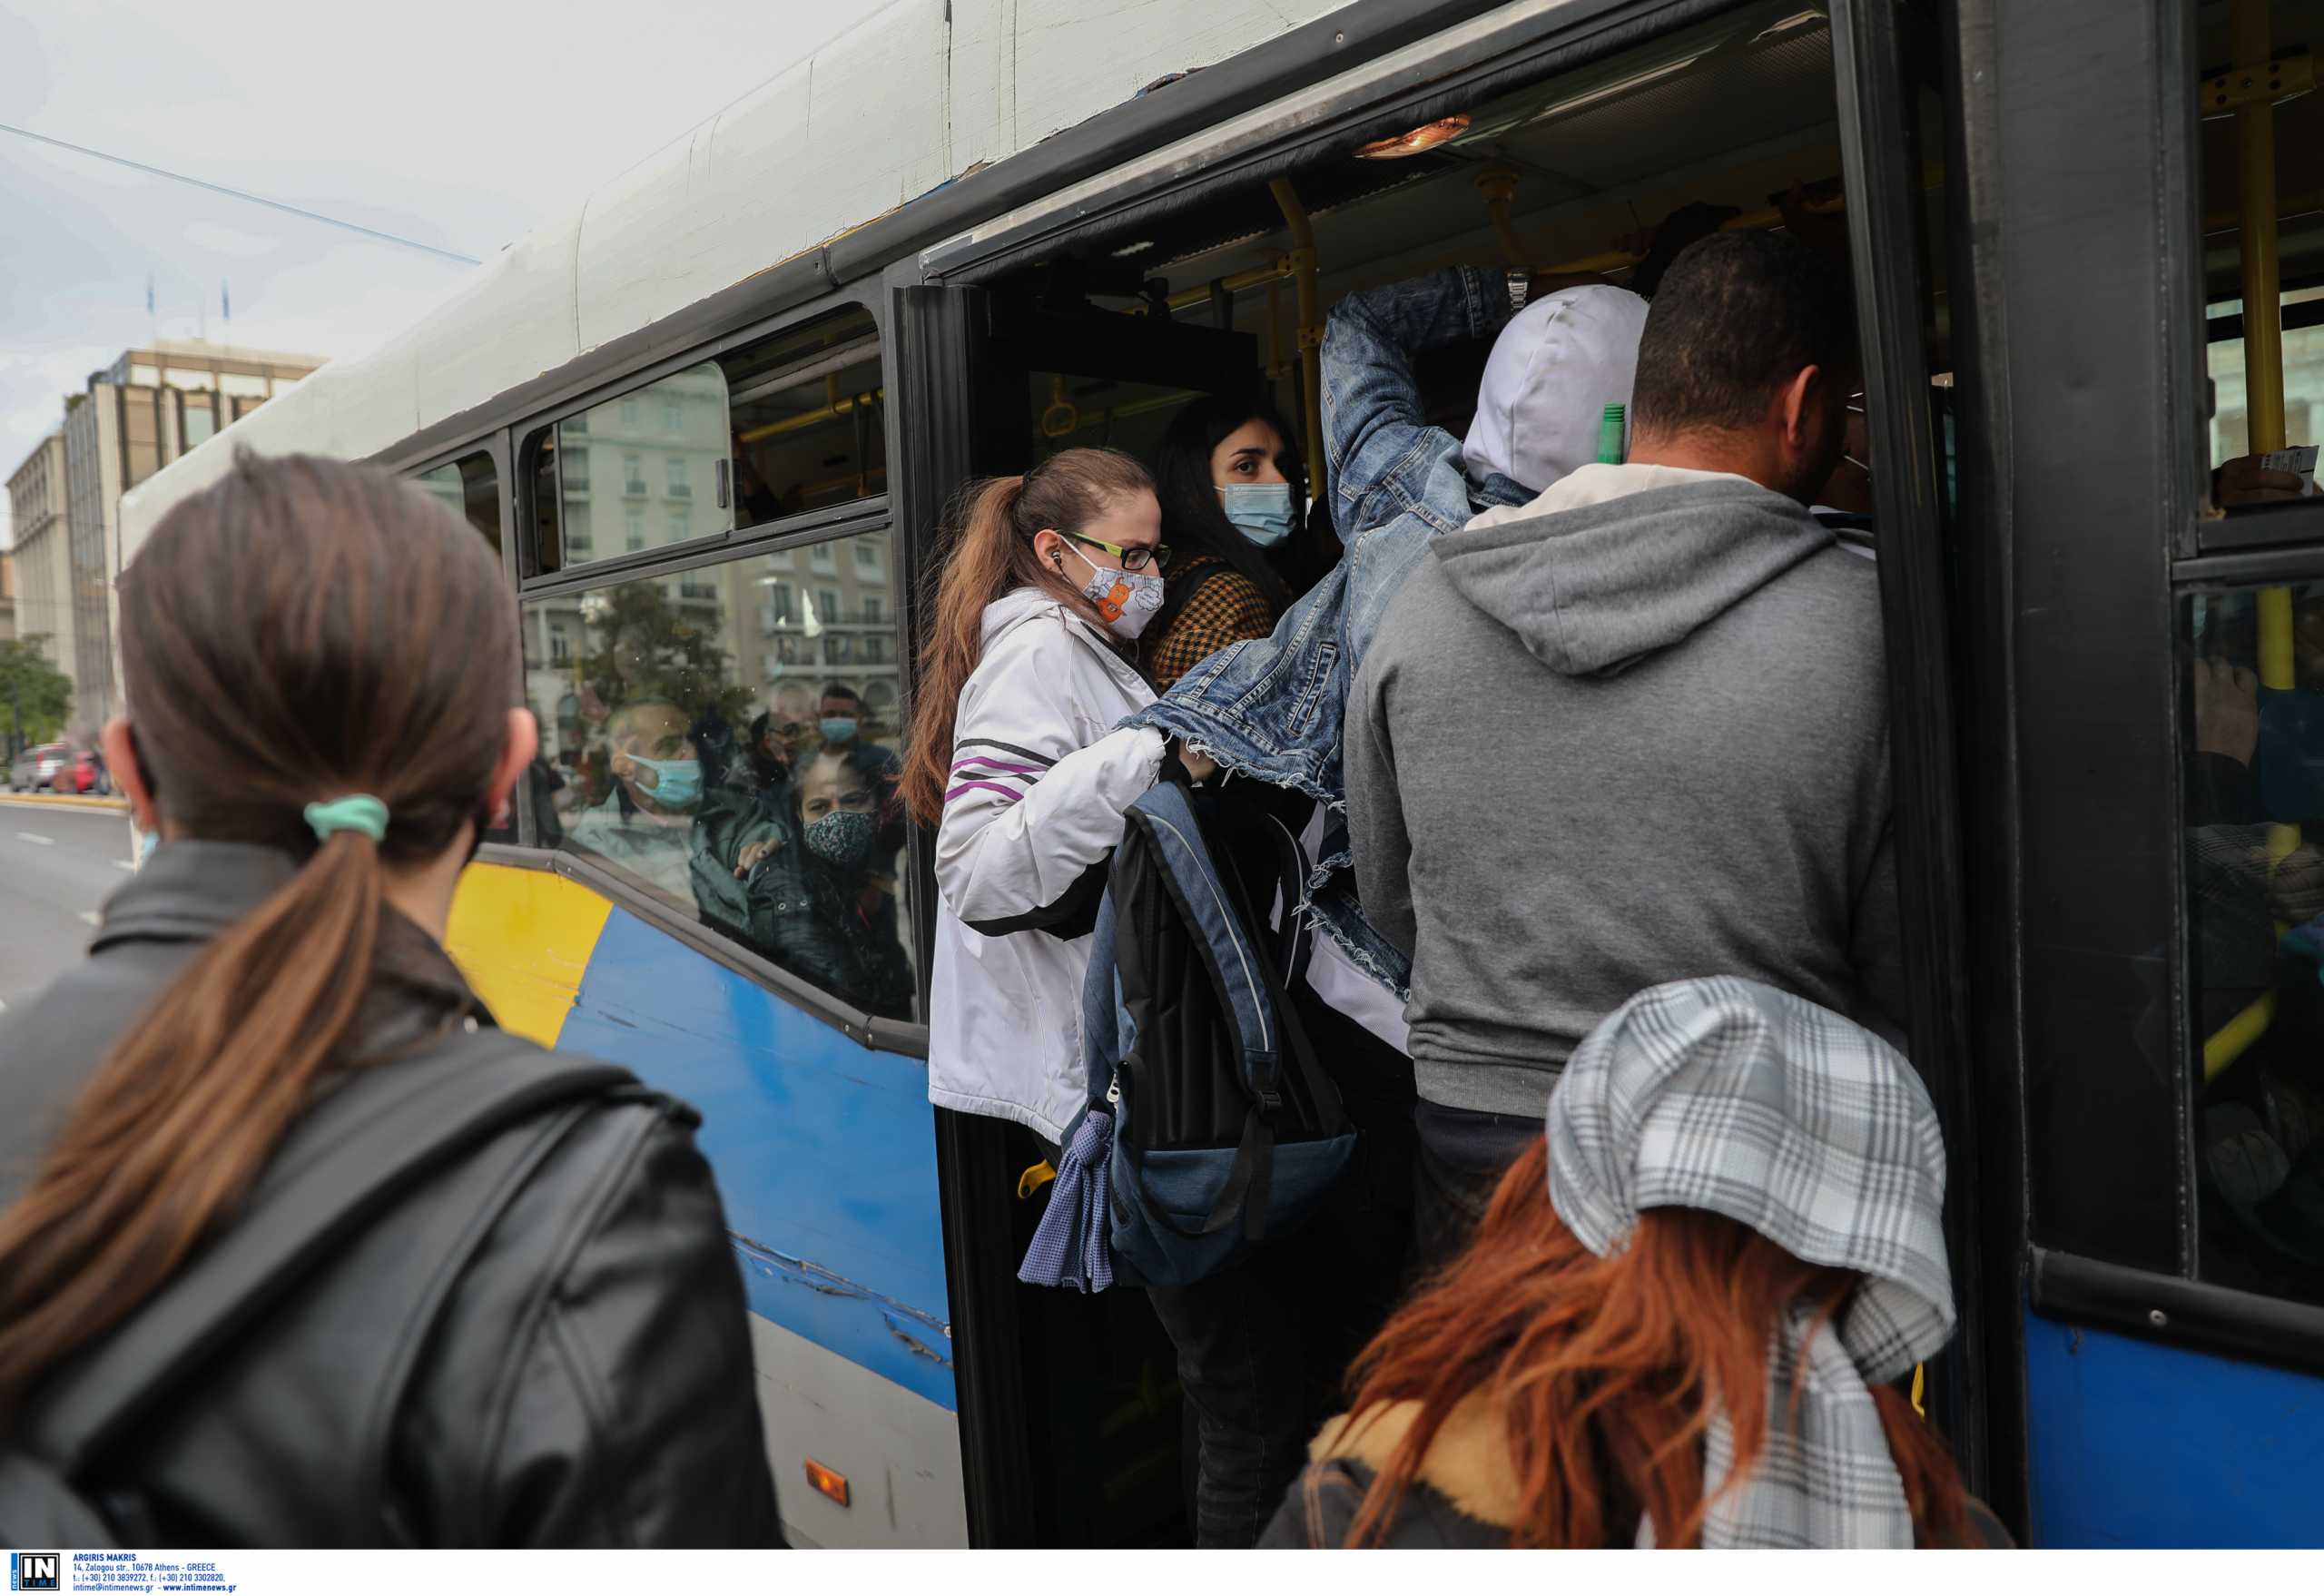 Κορονοϊός: Η χρήση μάσκας μειώνει δραστικά τη μετάδοση στα μέσα μεταφοράς